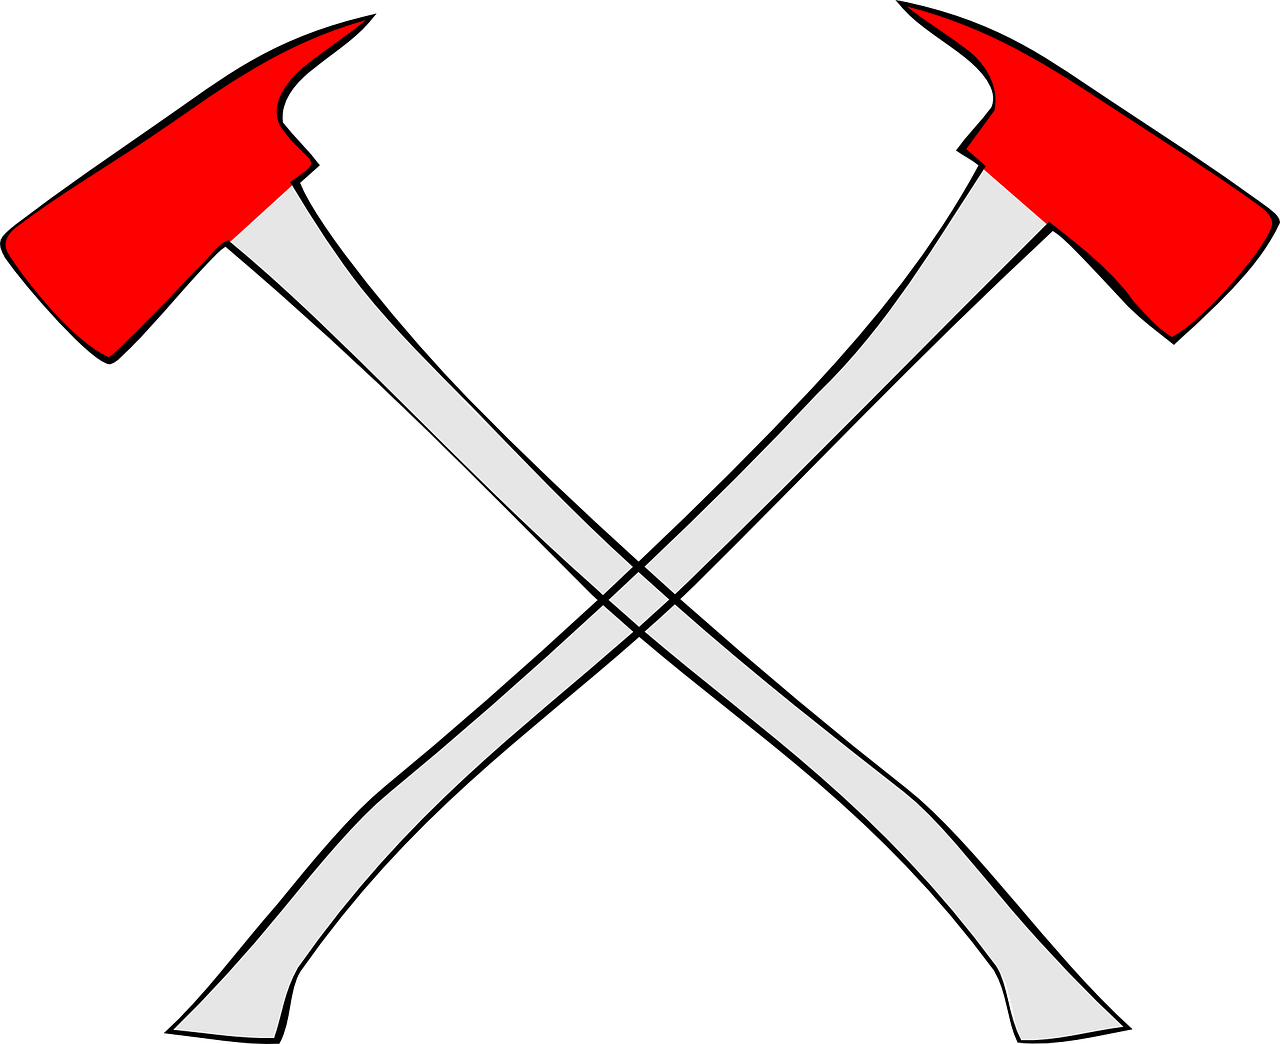 axes crossed symbol free photo